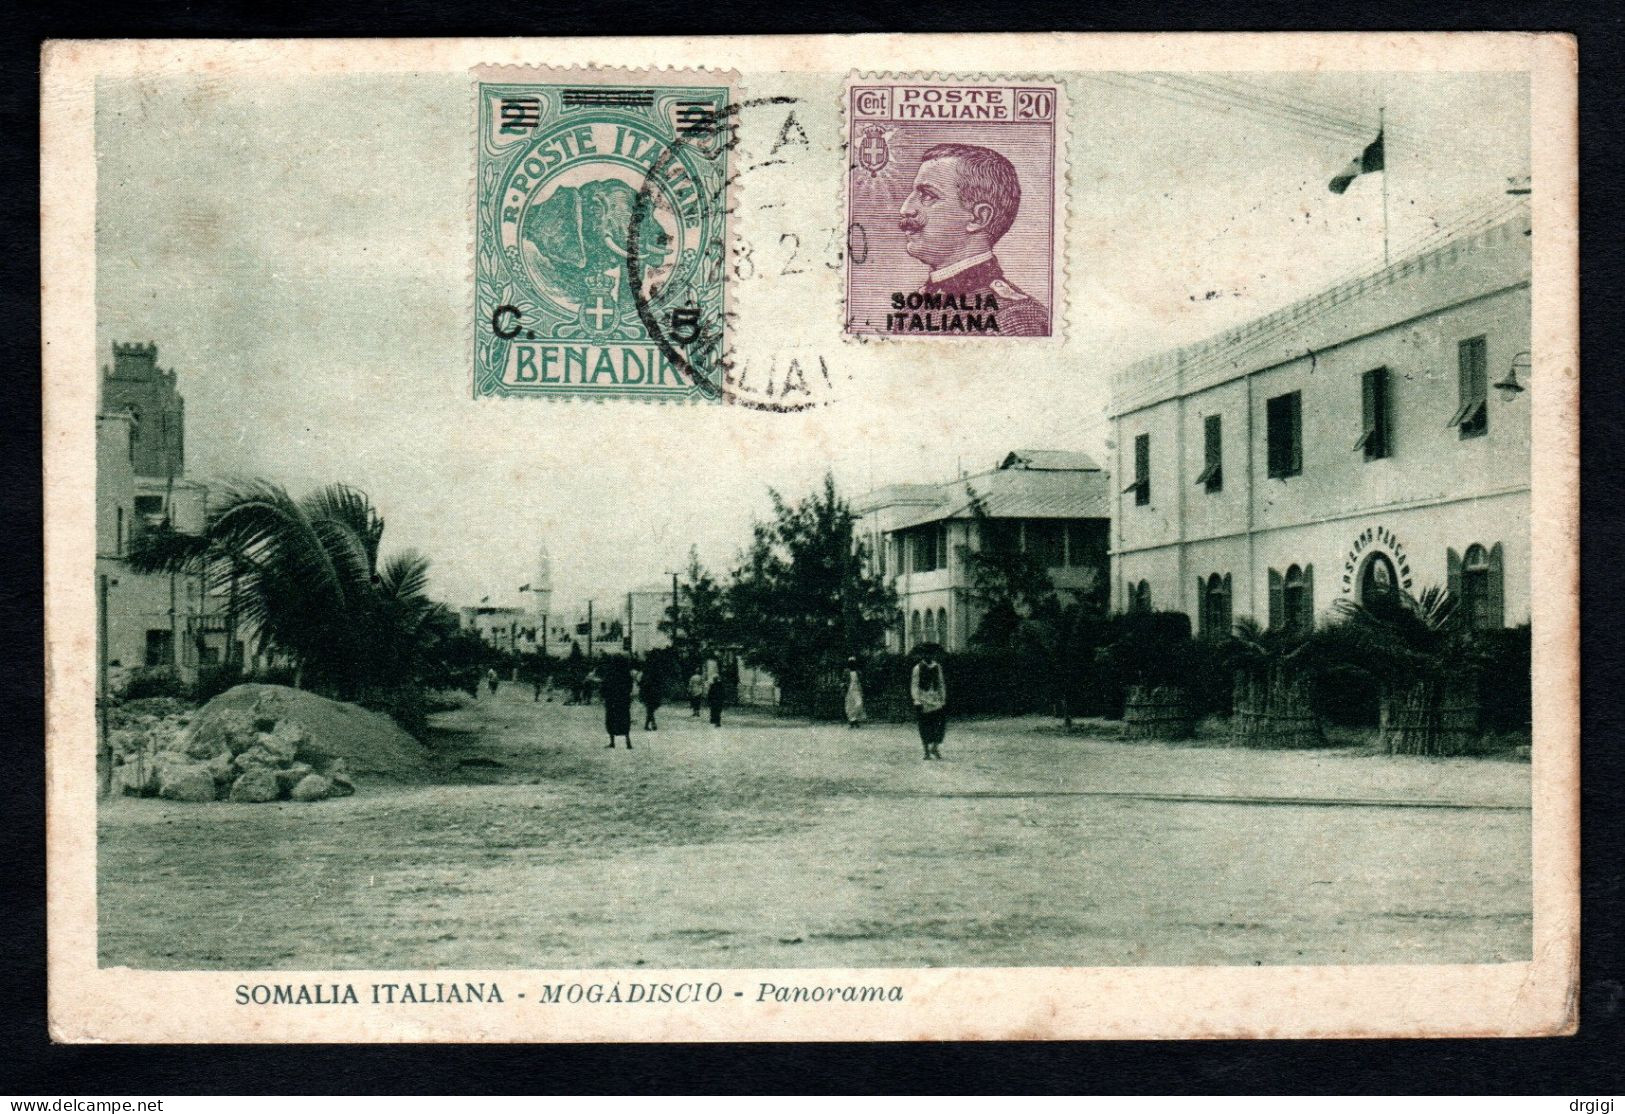 SOMALIA ITALIANA, CARTOLINA 1930, SASS. 74+95, BRAVA X VIENNA  - RARA - Somalia